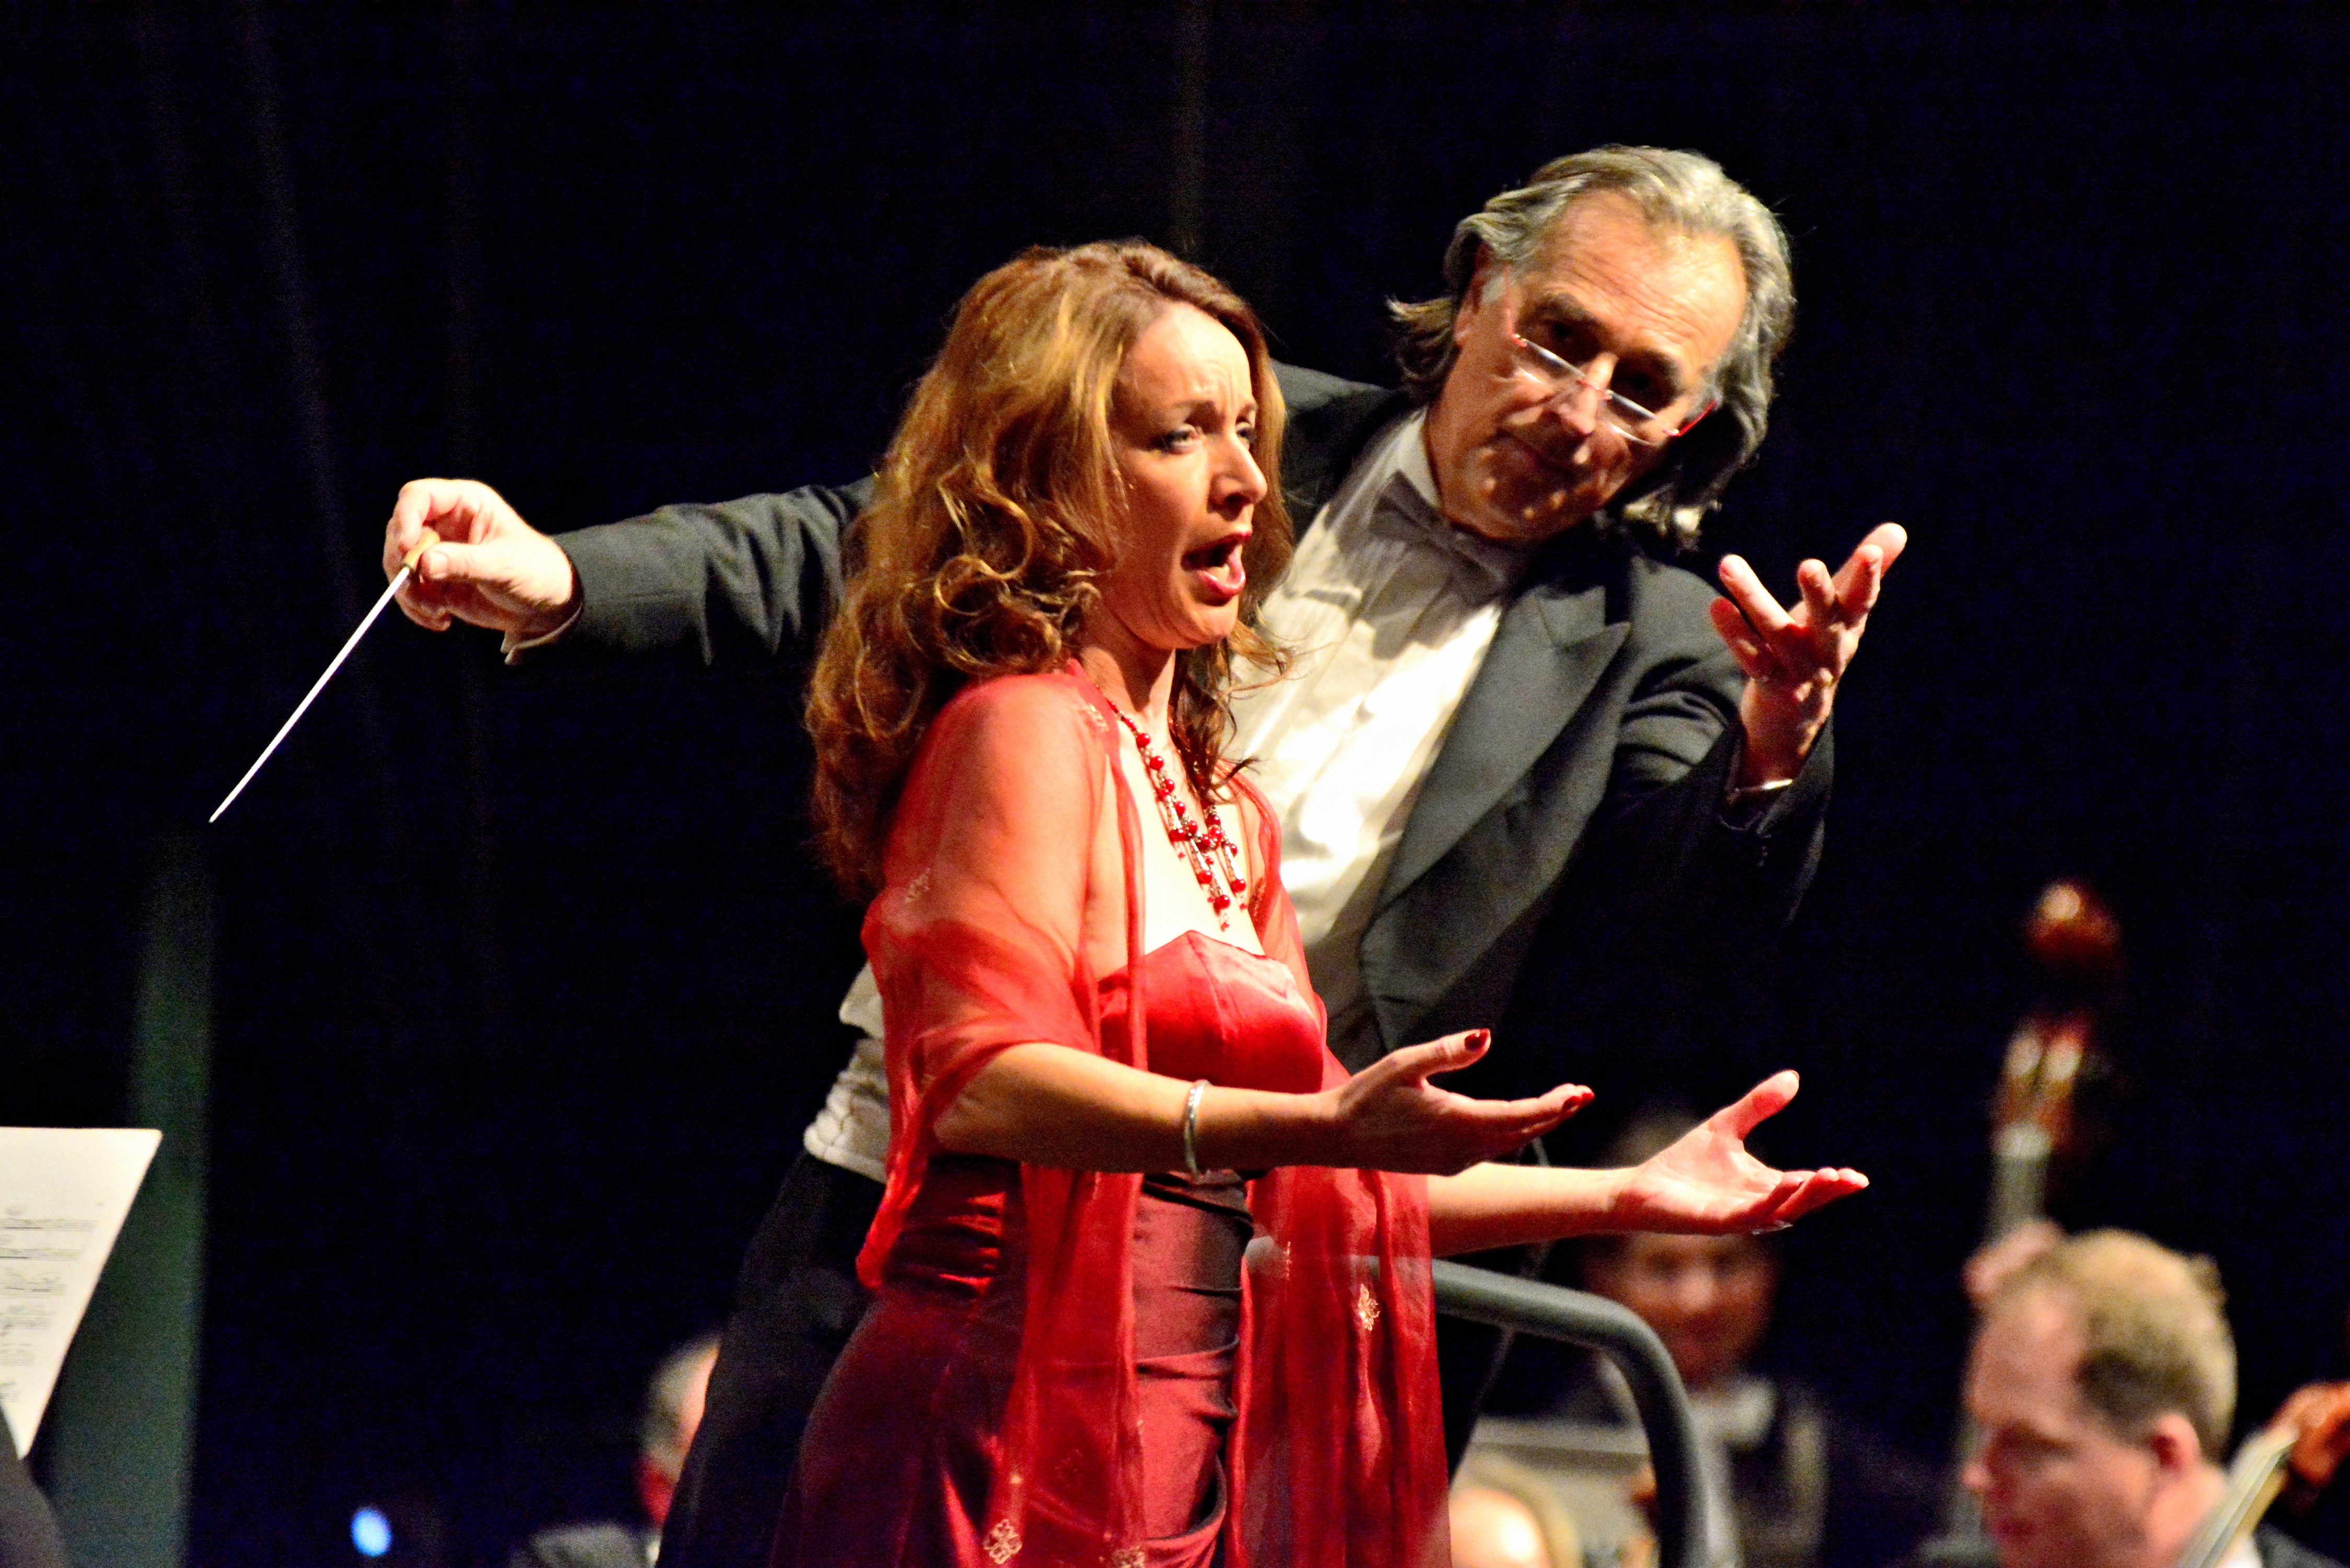 Die niederländische Sopranistin Marisca Mulder begeisterte das Publikum mit Arien von Giacomo Puccini ("O mio babbino caro" aus "Gianni Schicci") und Franz Lehár (Vilja-Lied aus "Die lustige Witwe".